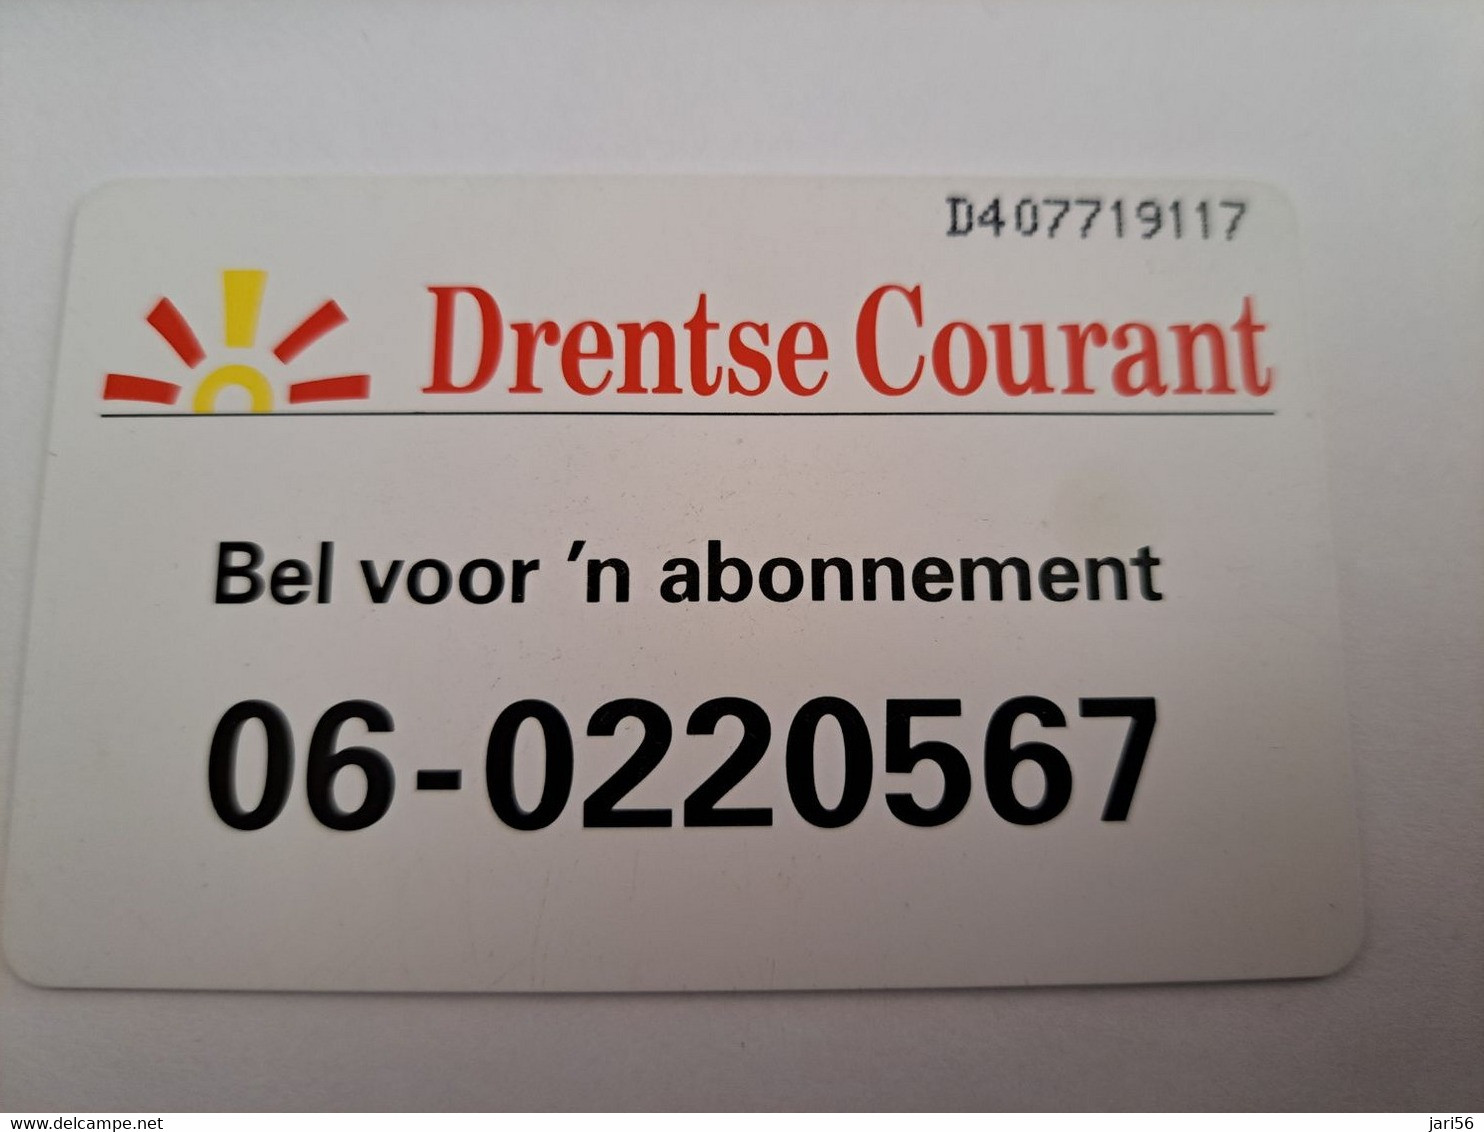 NETHERLANDS CHIPCARD   DRENTSE COURANT   CRD 168/02   / HFL 5,00  PRIVATE /  /  MINT   ** 10741 ** - Publiques